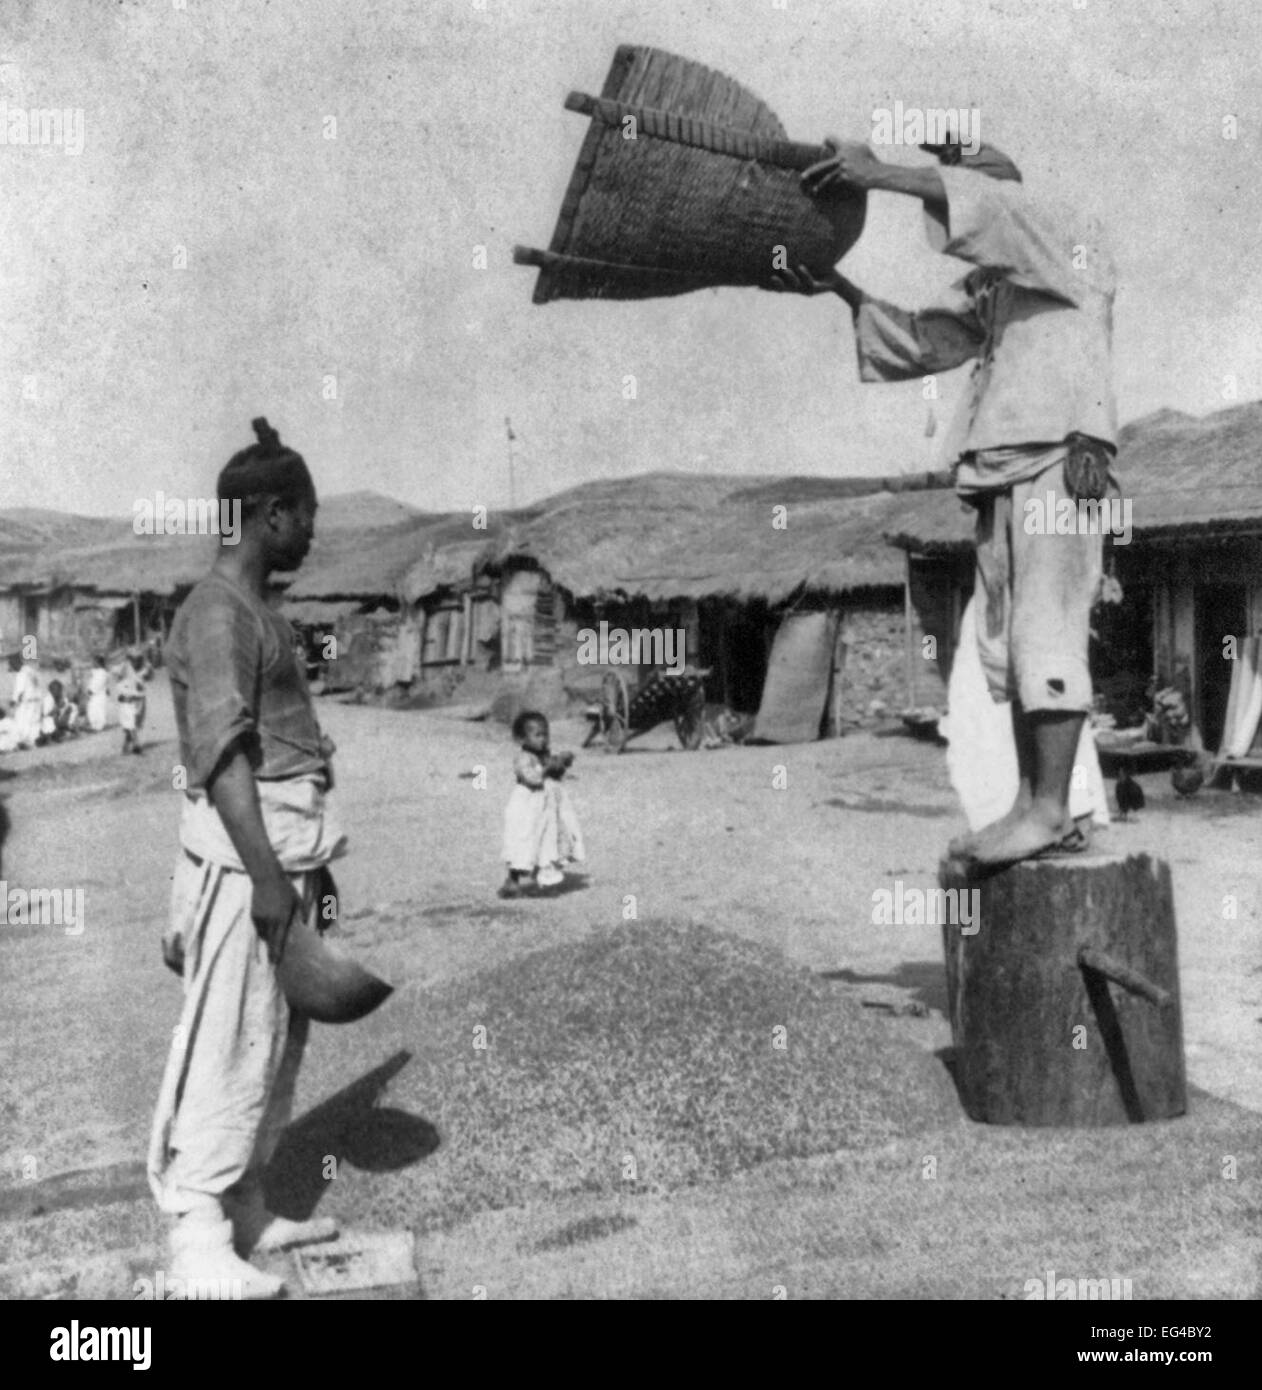 La vie primitive dans le 'royaume ermite" - Vanner l'orge dans les rues de Chemulpo, Corée 1904 Banque D'Images